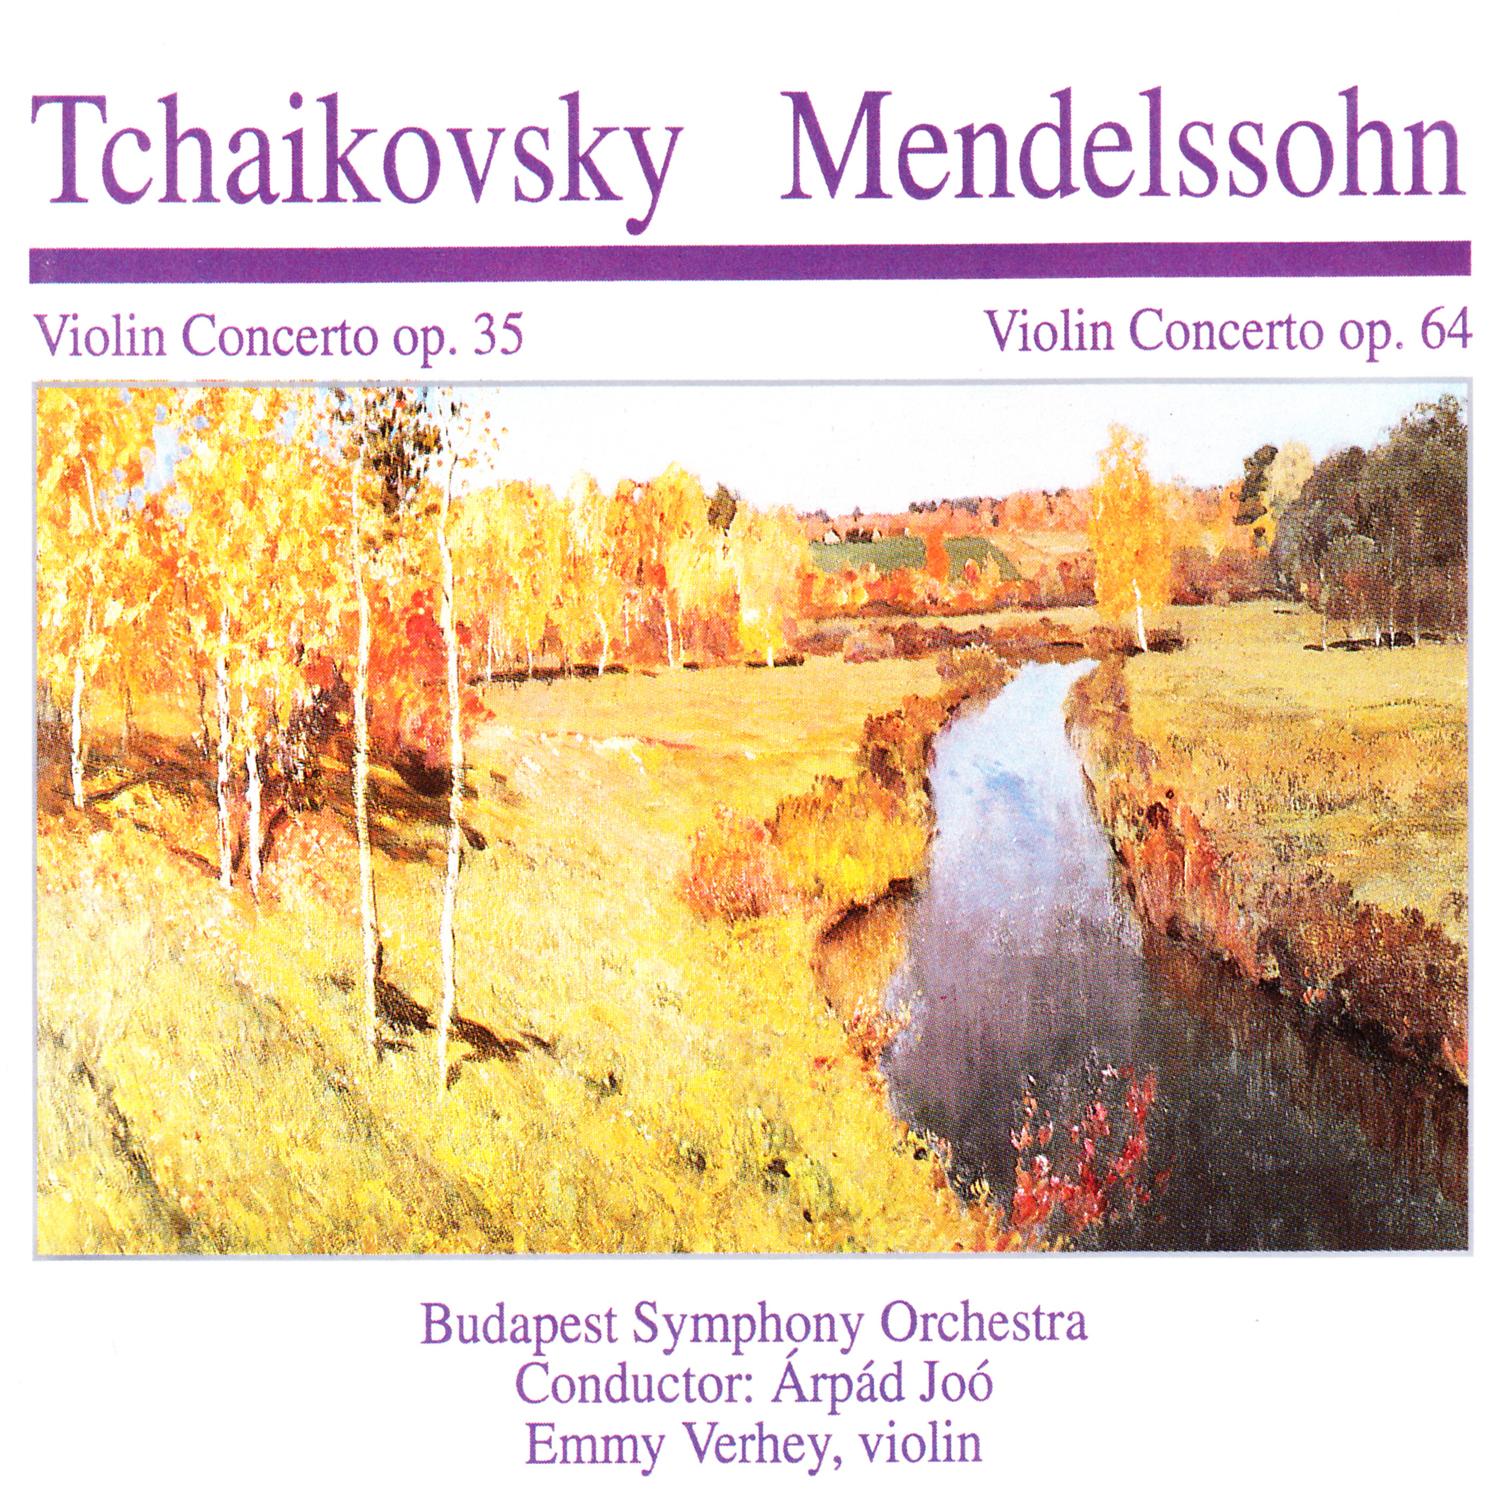 Violin Concerto in E Minor, Op. 64: III. Allegretto non troppo  Allegro molto vivace